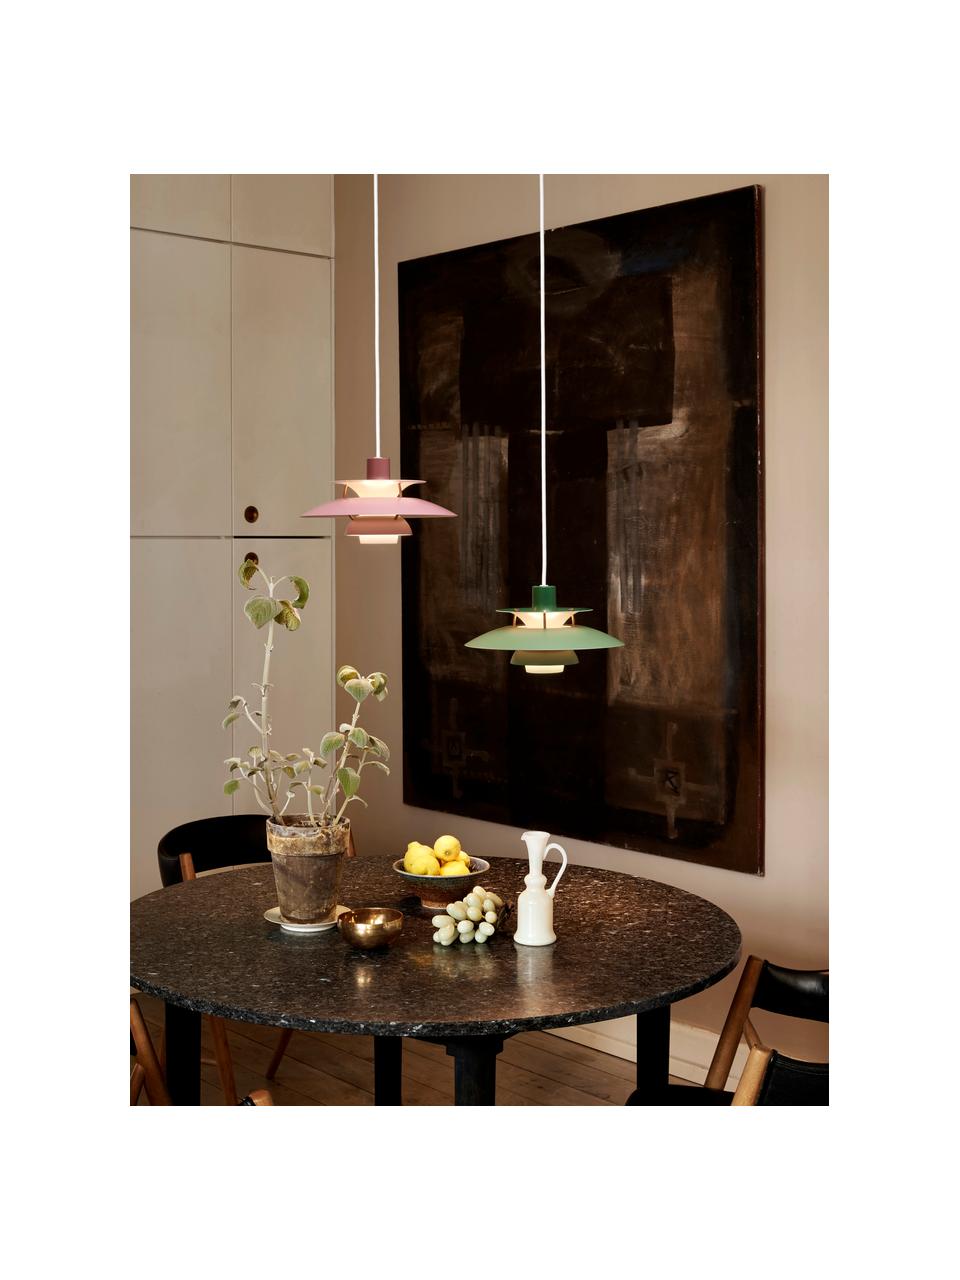 Hanglamp PH 5 Mini, Lampenkap: gecoat metaal, Groentinten, goudkleurig, Ø 30 x H 16 cm